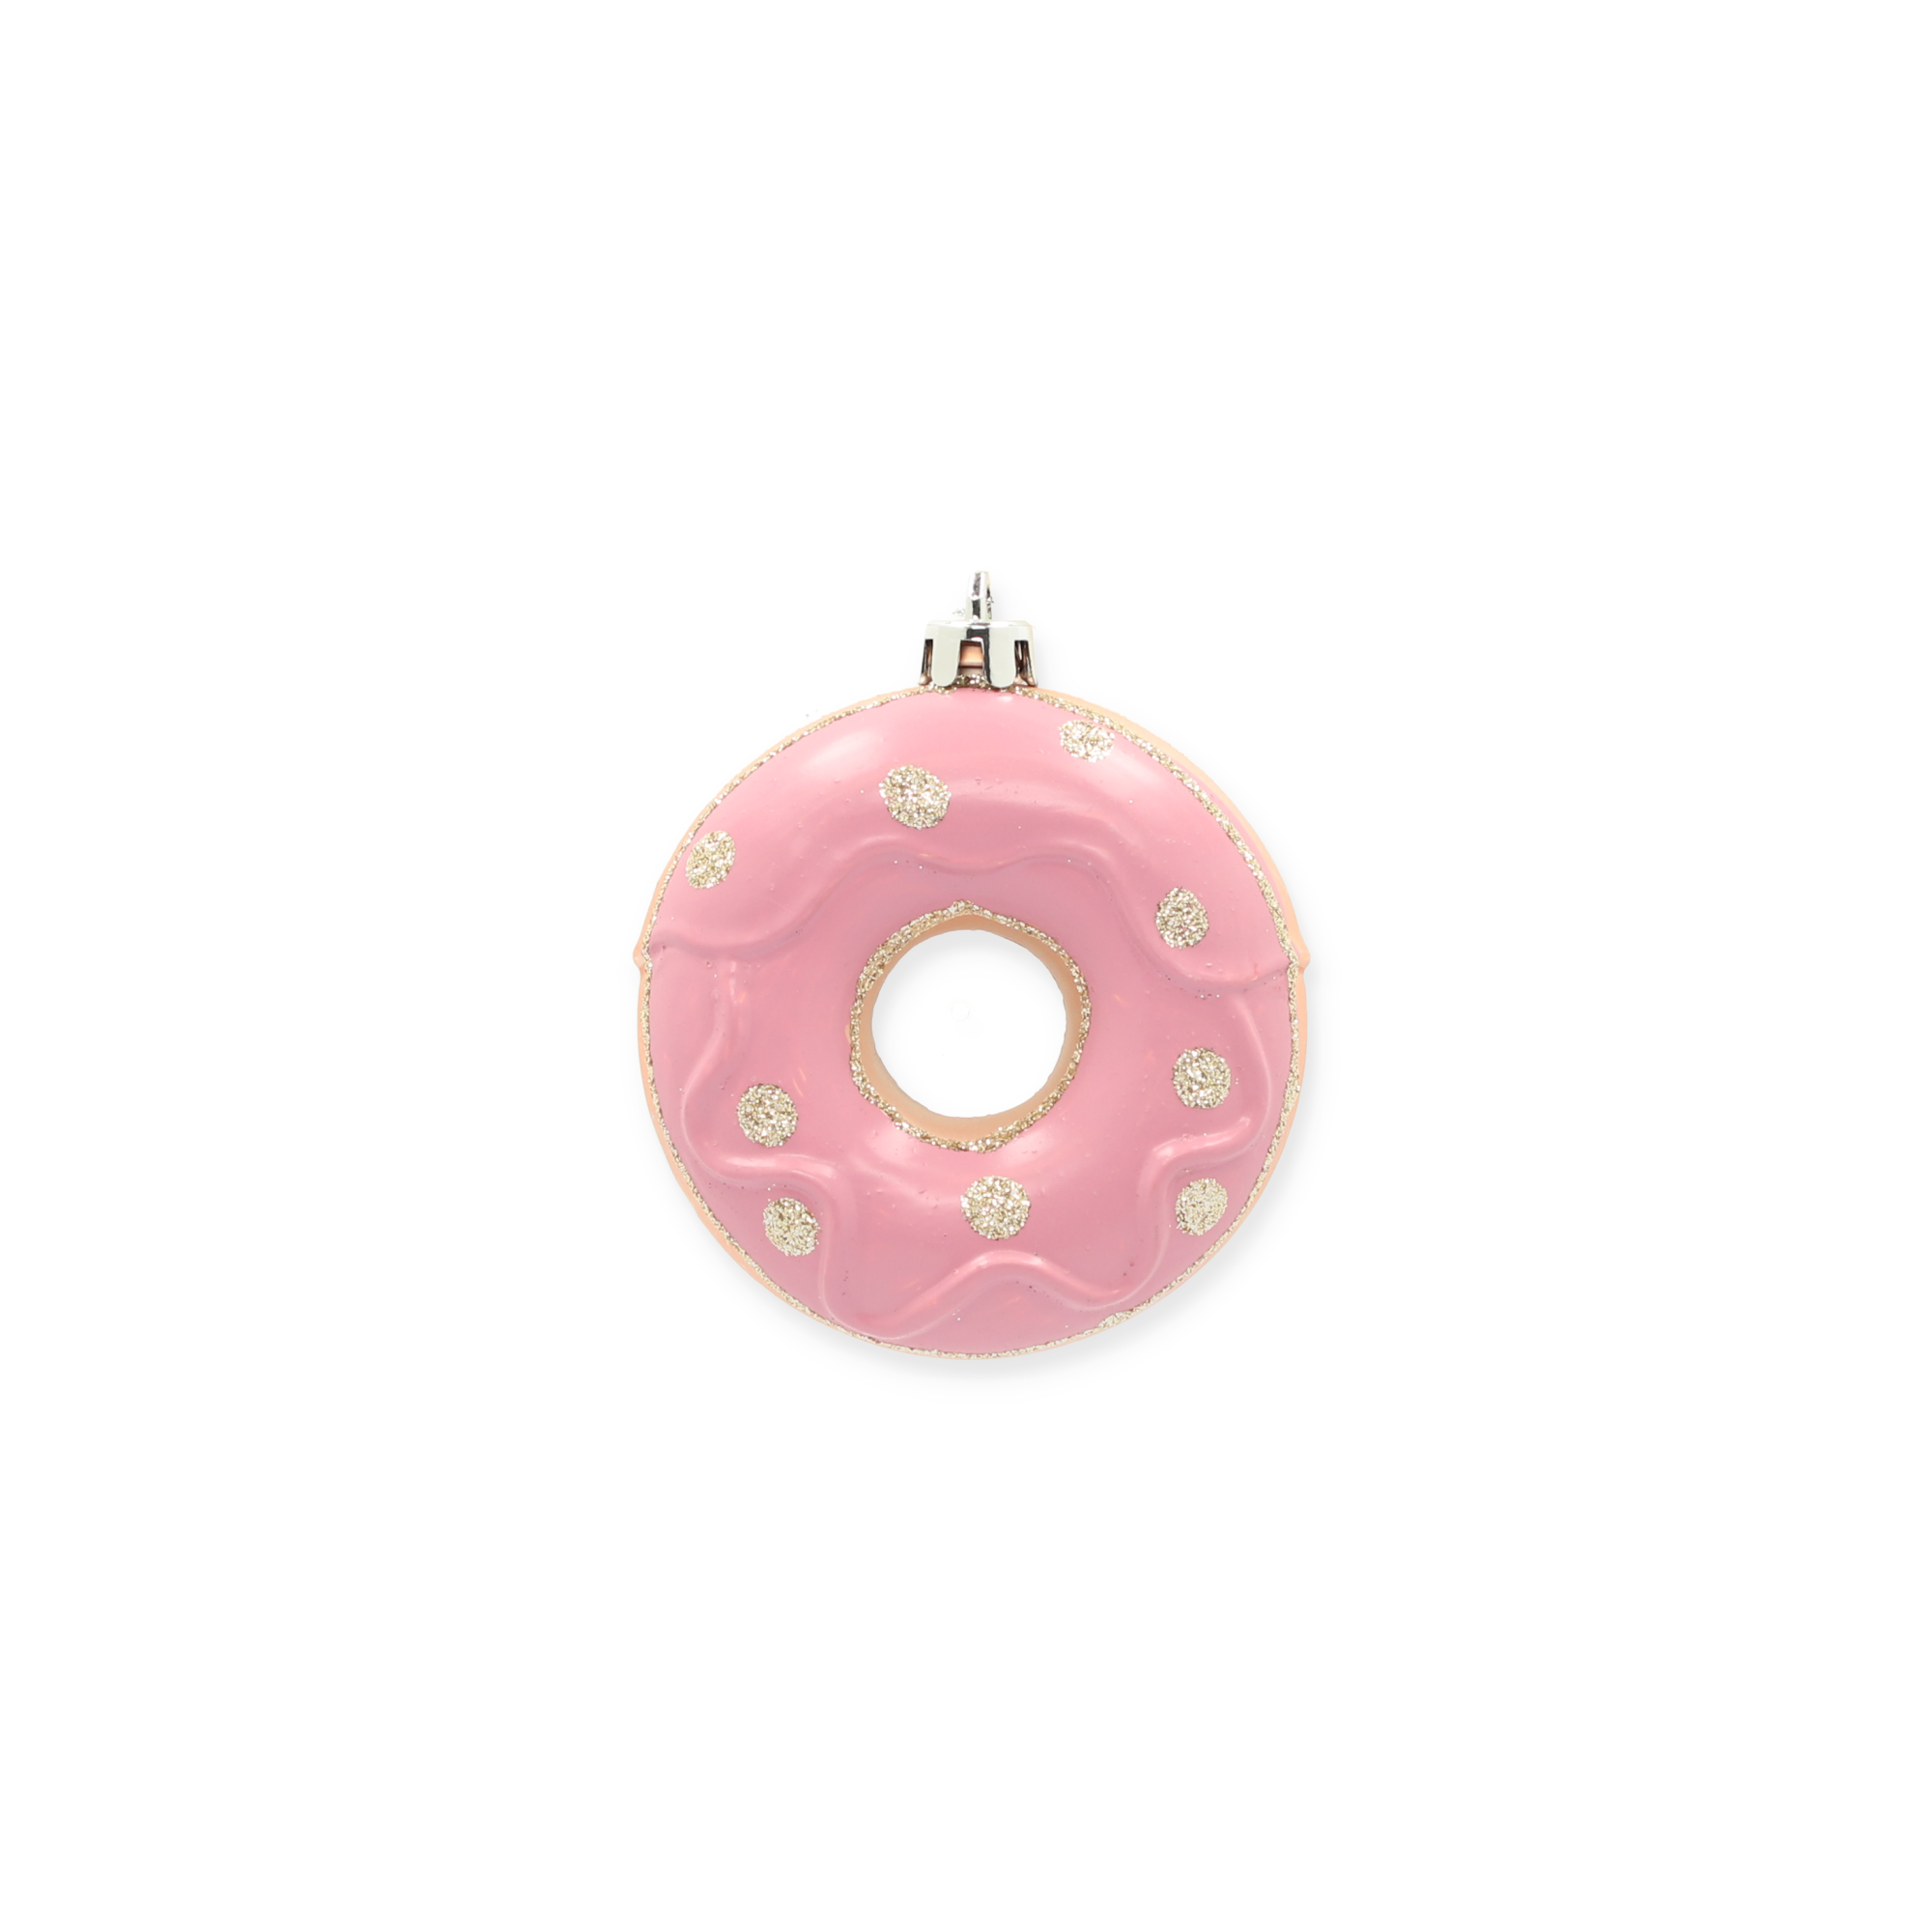 Christbaumschmuck Donut rosa Ø 8 x 3 cm + product picture